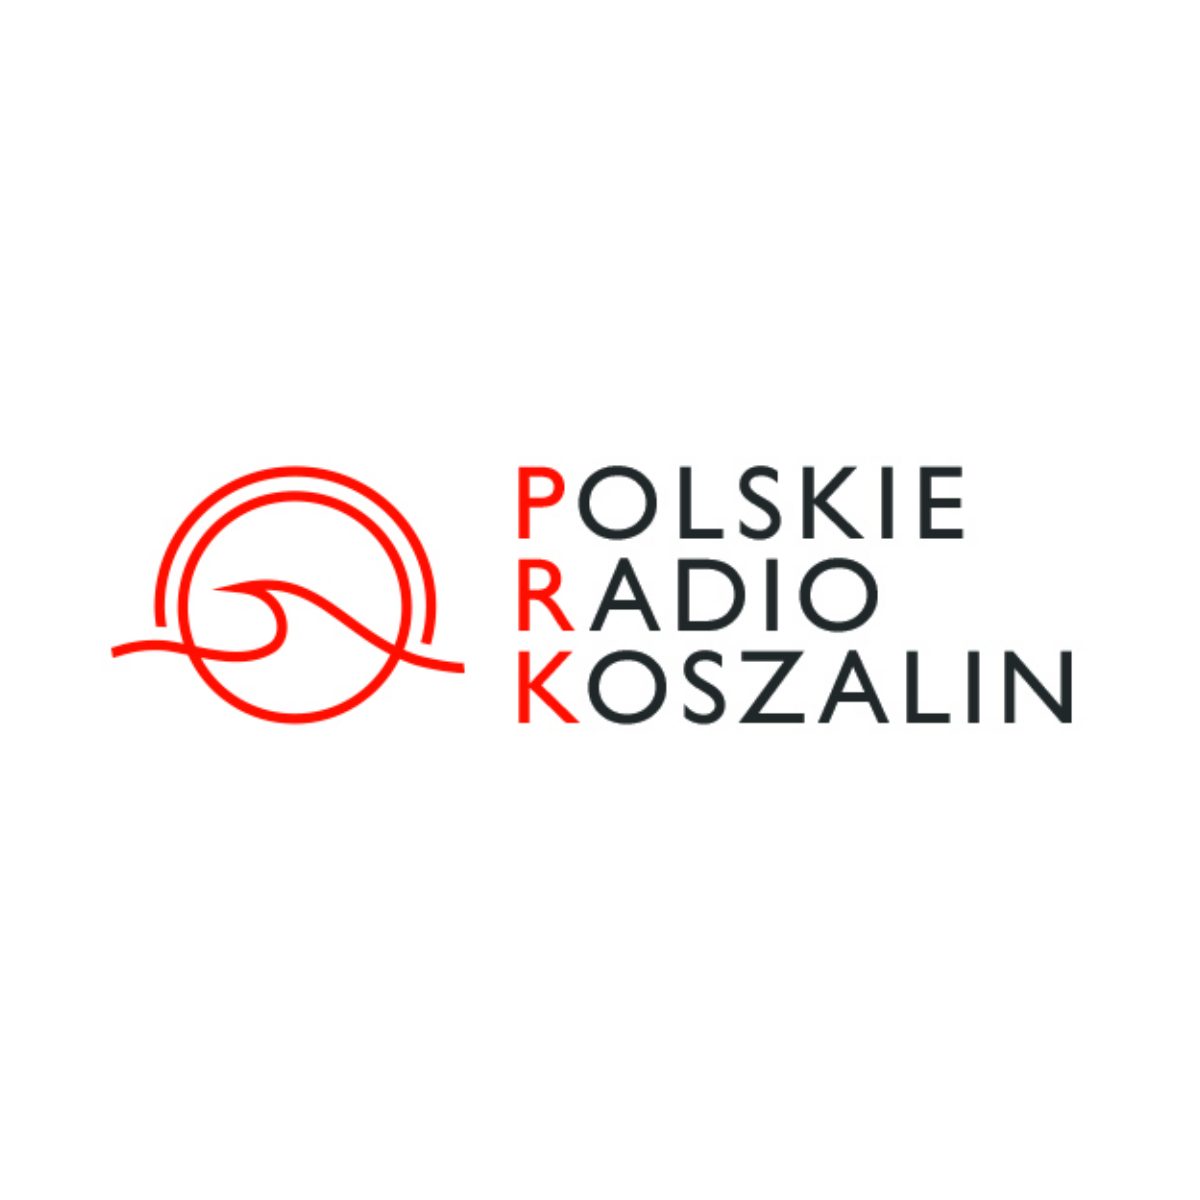 Polskie Radio Koszalin